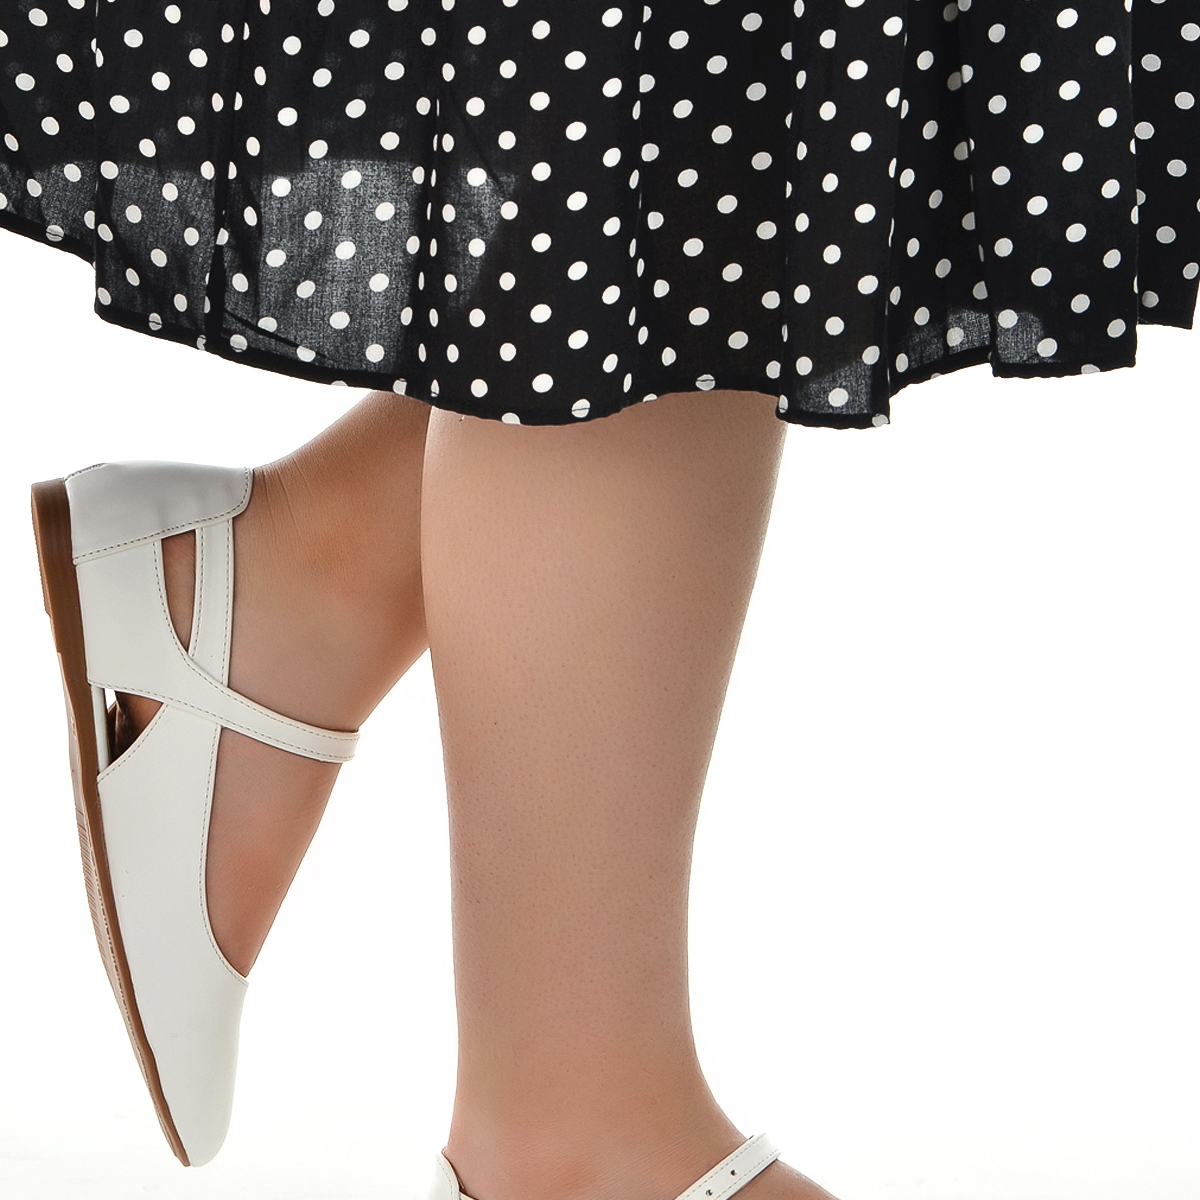 Flo 1920-201 Cilt Sandalet Bayan Babet Ayakkabı Beyaz. 2